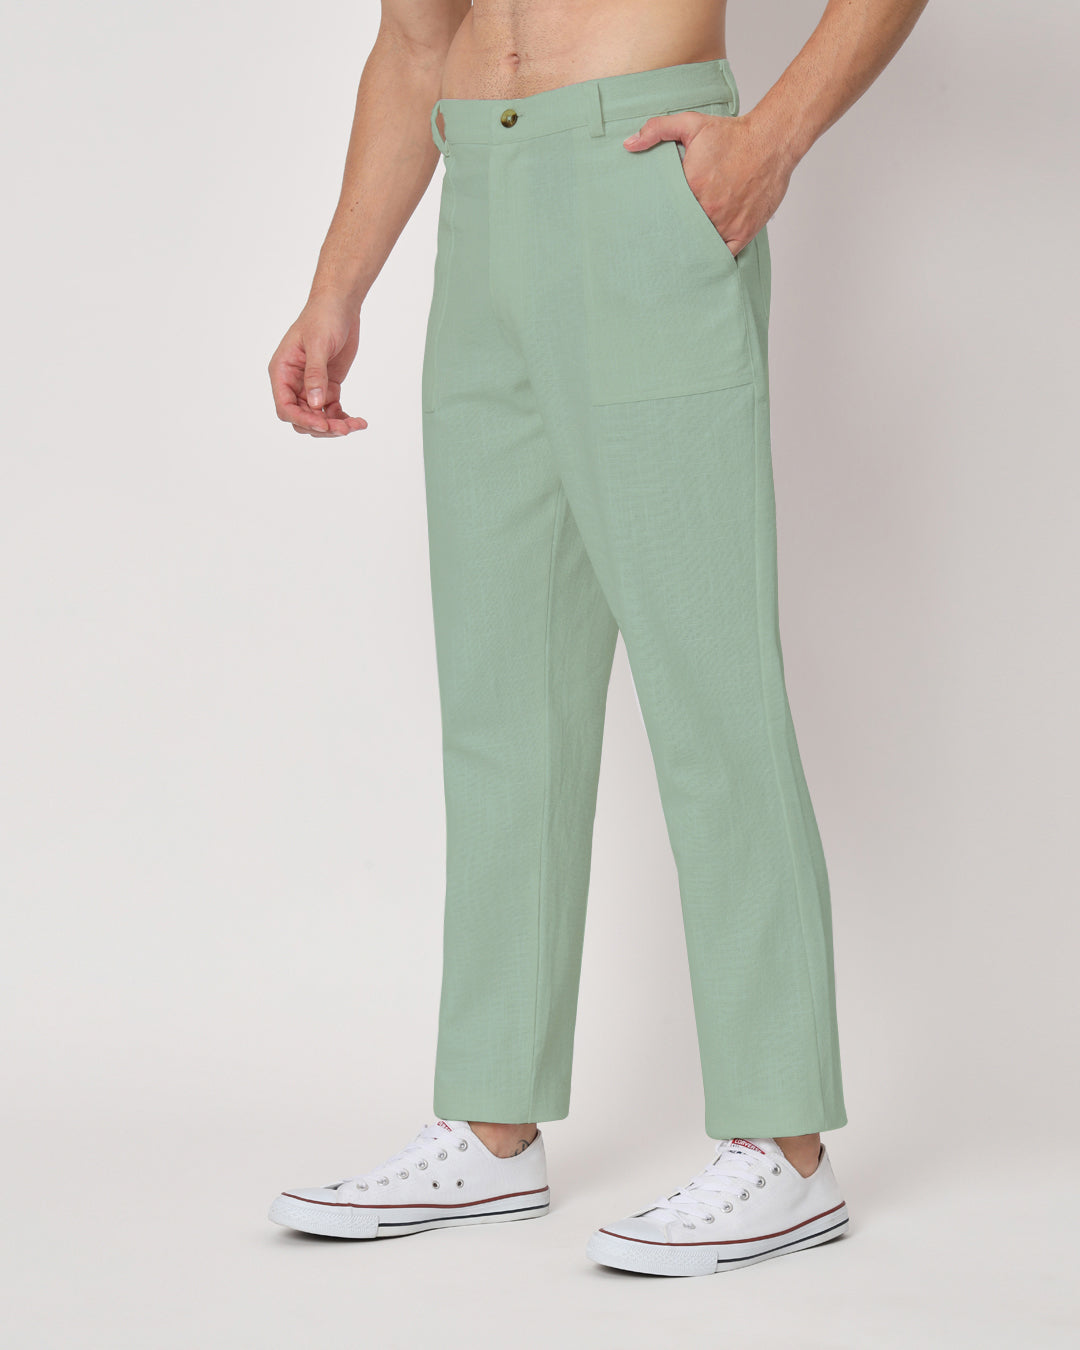 Combo : Comfy Ease Beige & Spring Green Men's Pants - Set of 2